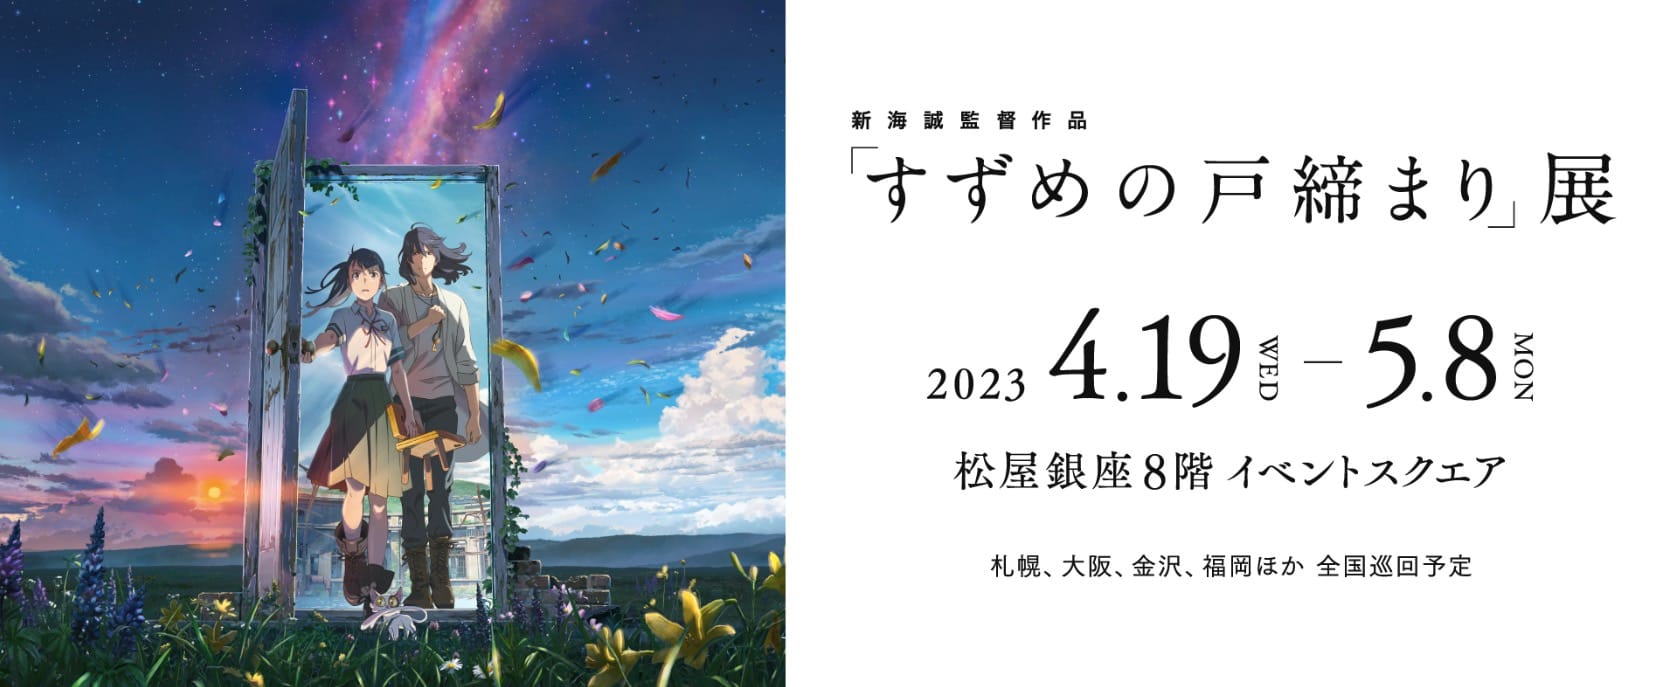 新海誠「すずめの戸締まり 展」in 松屋銀座 4月19日より全国巡回開催!